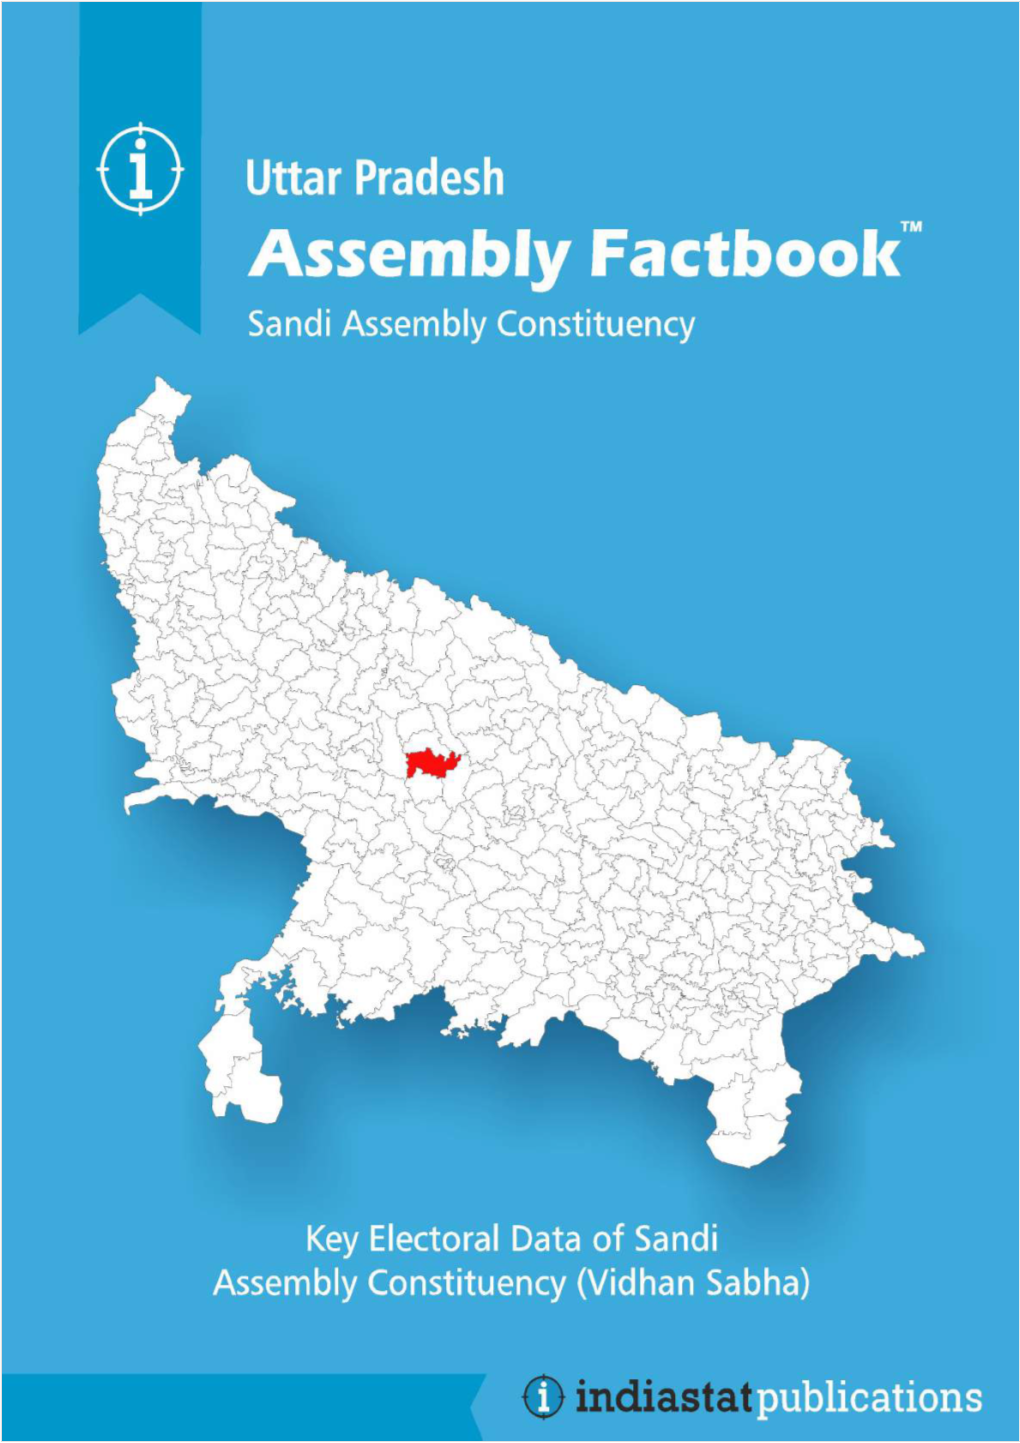 Sandi Assembly Uttar Pradesh Factbook